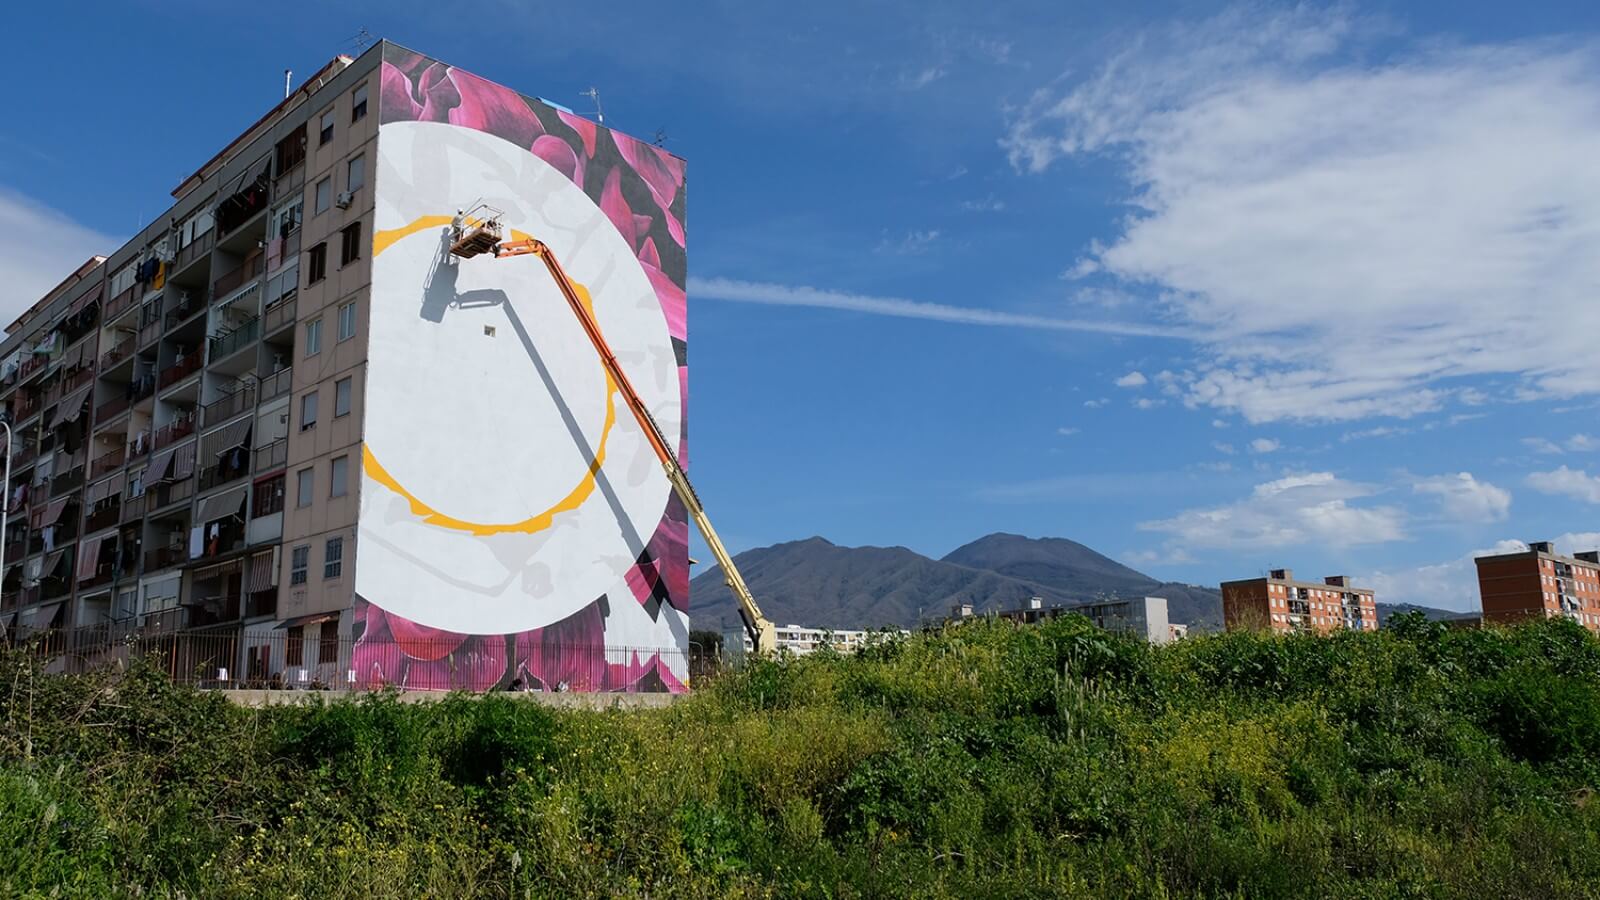 «O sciore cchiù felice», el nuevo mural de Fabio Petani